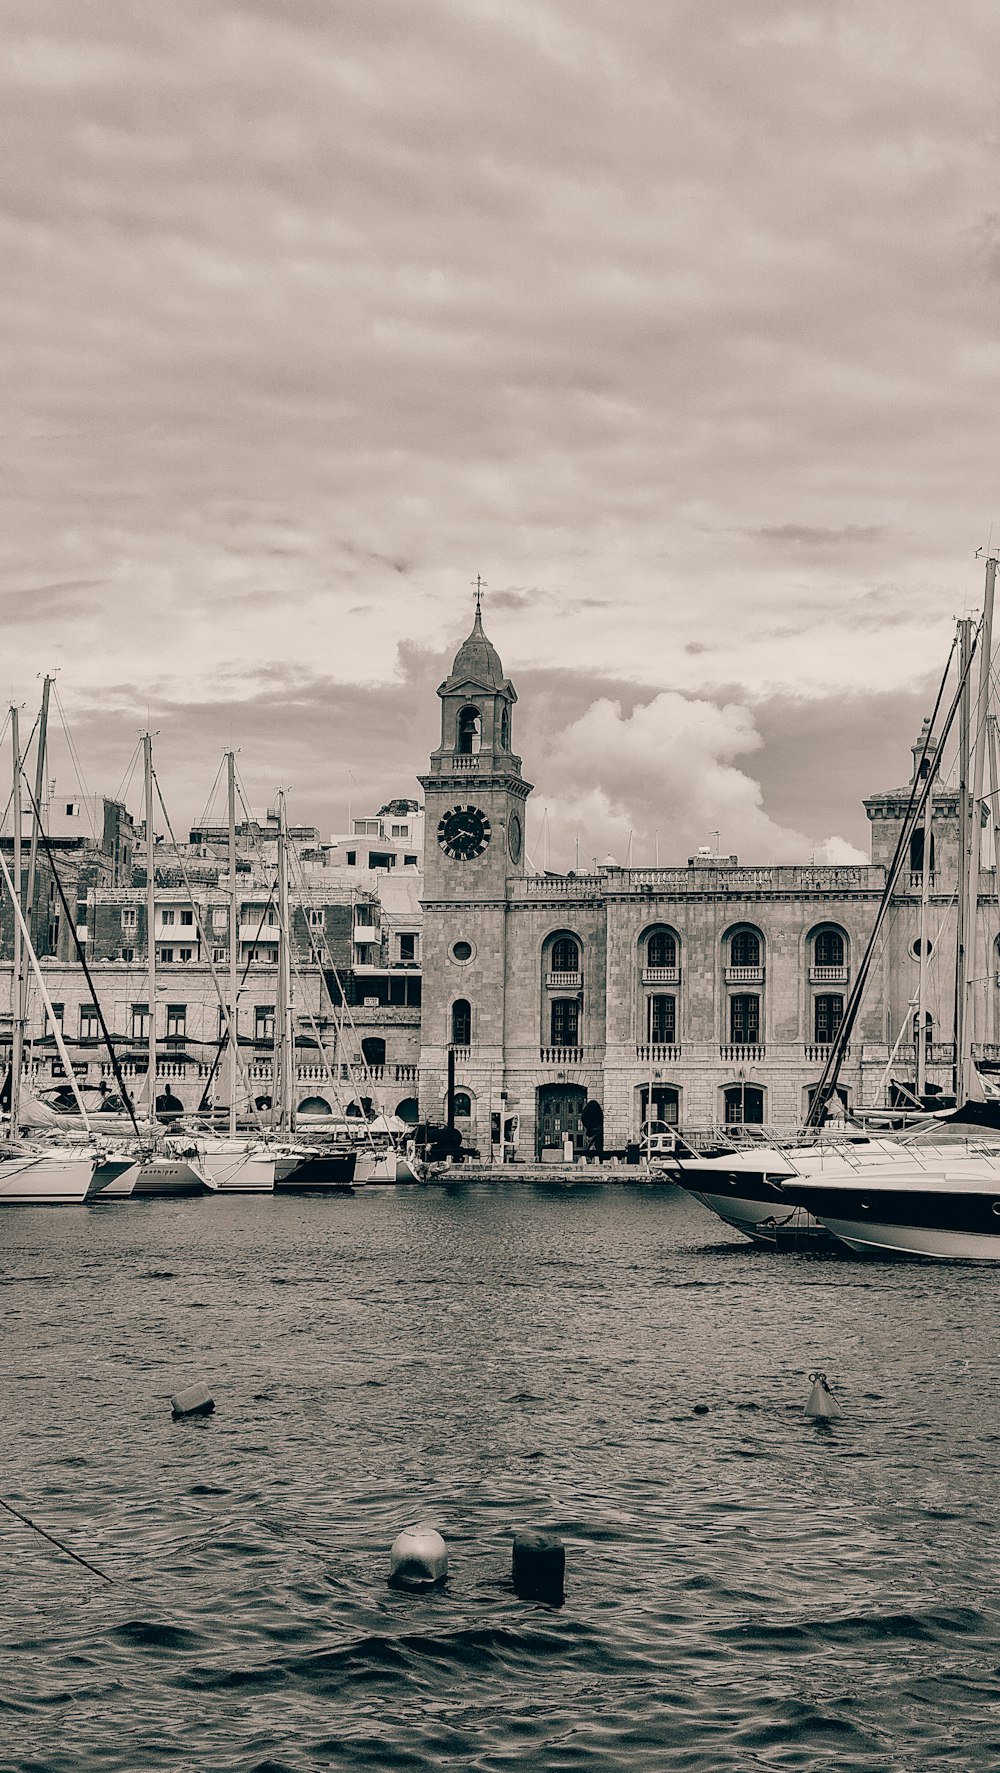 Une photo en noir et blanc de bateaux dans un port